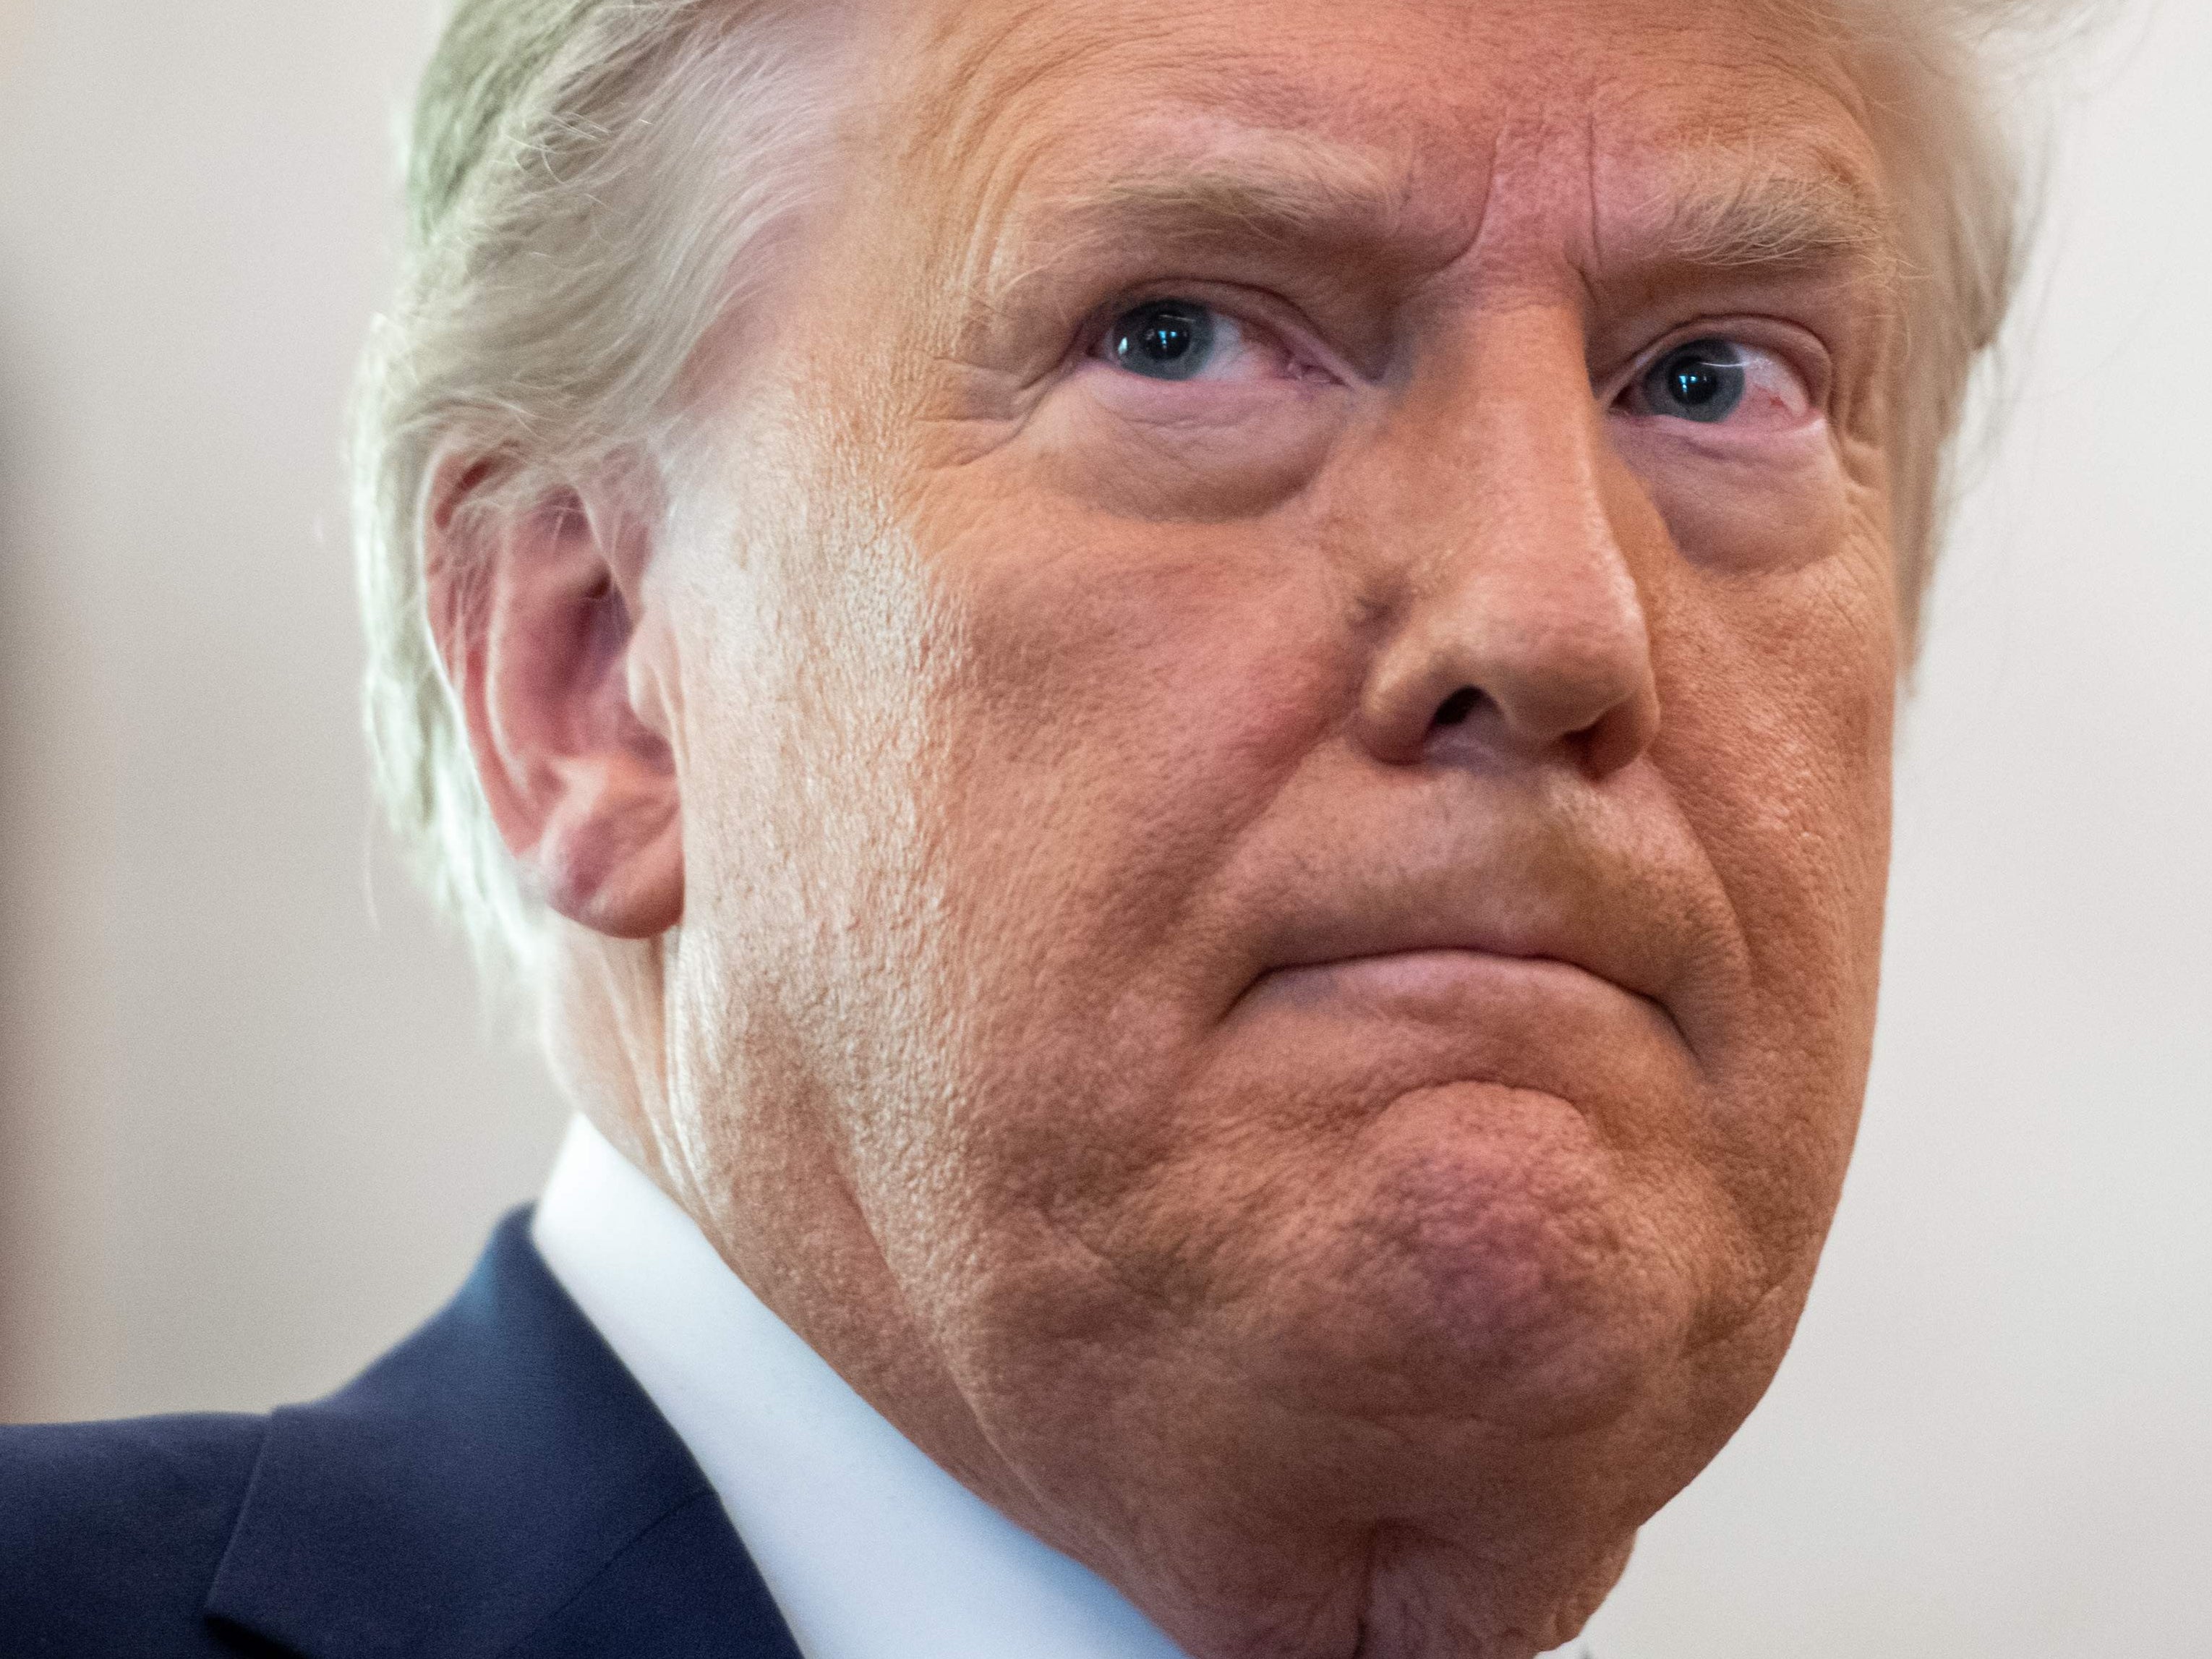 Donald Trump, fotografiado el 7 de diciembre de 2020, ha estado perdonando a sus aliados antes de dejar el cargo el próximo mes.